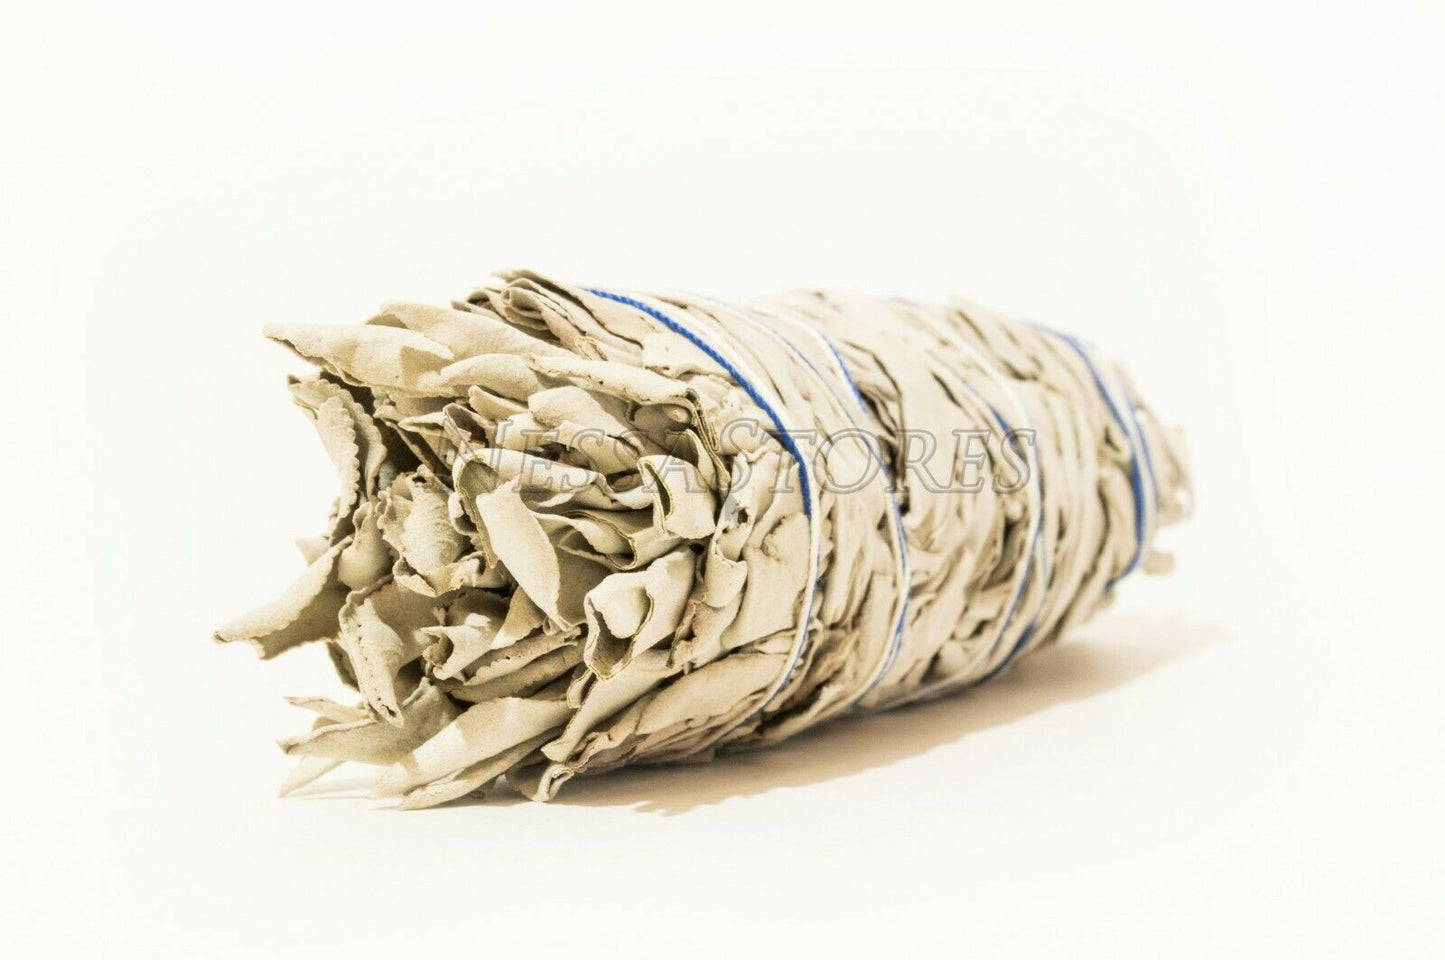 NessaStores California White Sage Smudge Incense 7"-8" Bundle (4 pcs) #JC-009